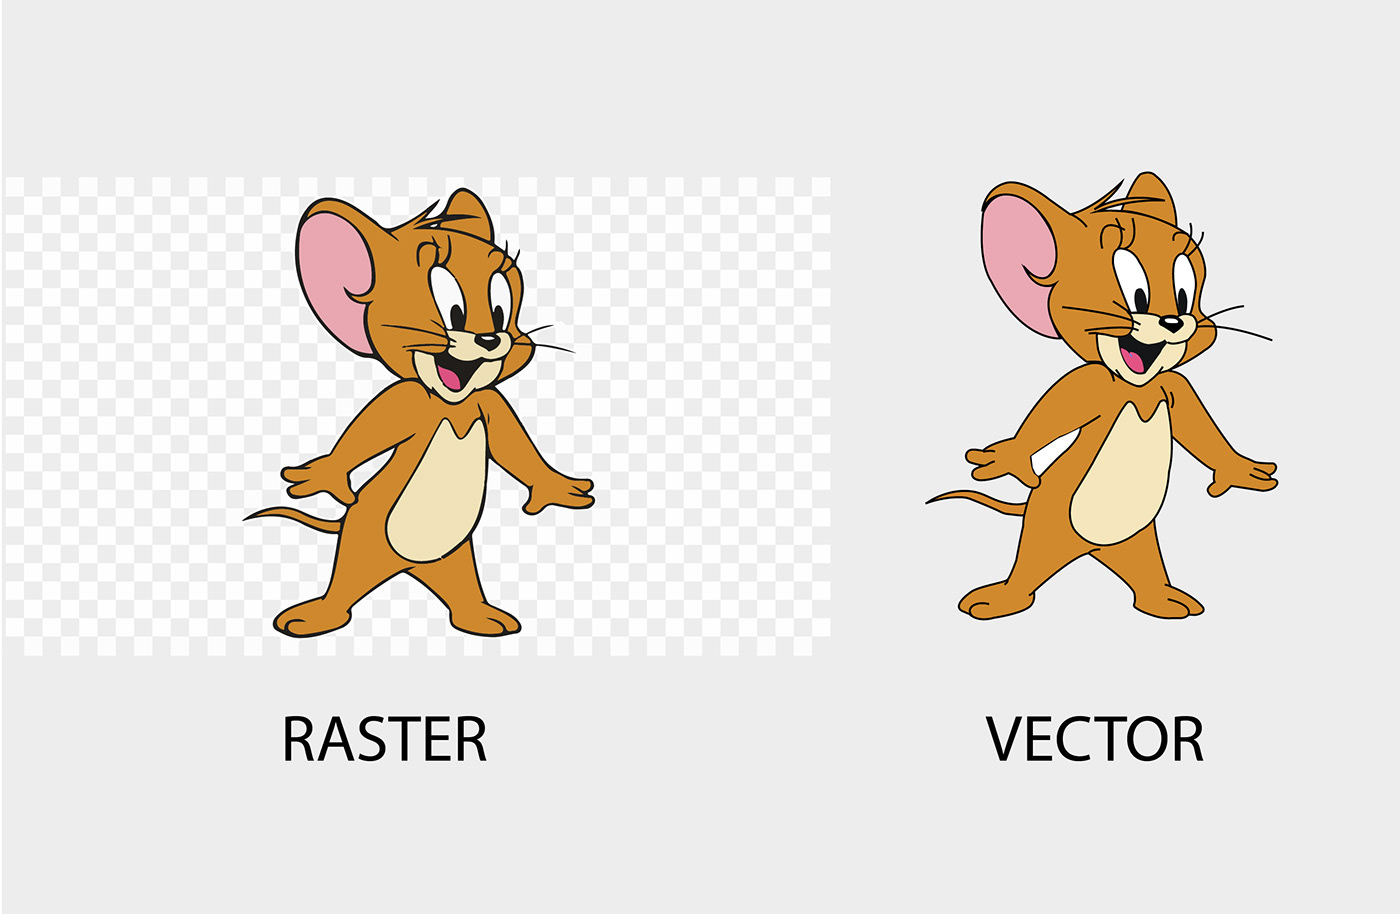 raster to vector raster file Vector Image logo to vector vectorize jpg to vector redraw logo convert to vector recreate logo logo trace